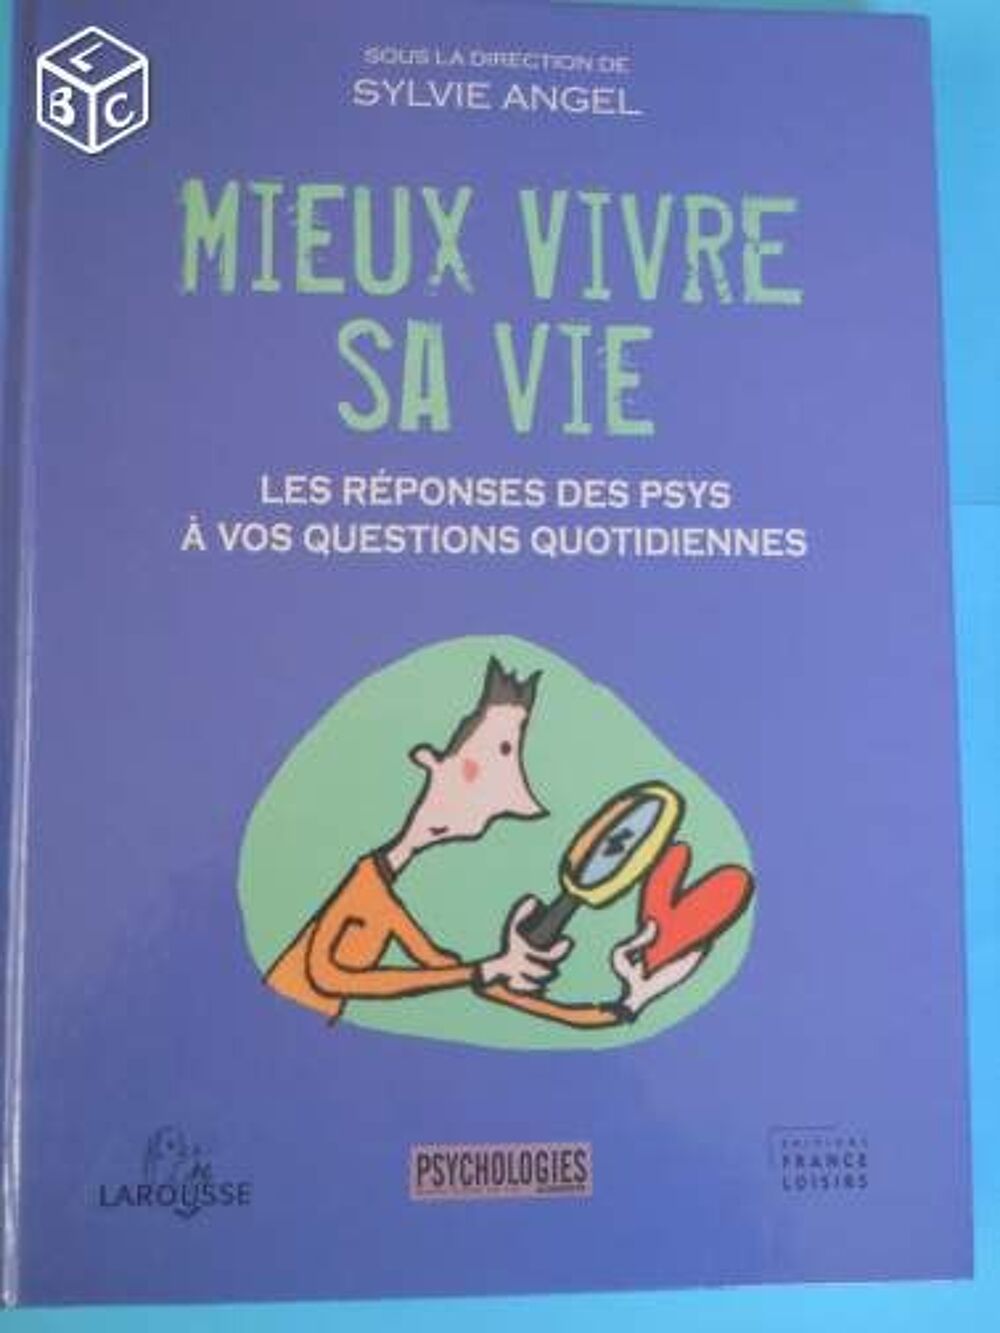 MIEUX VIVRE SA VIE - Sylvie ANGEL Livres et BD